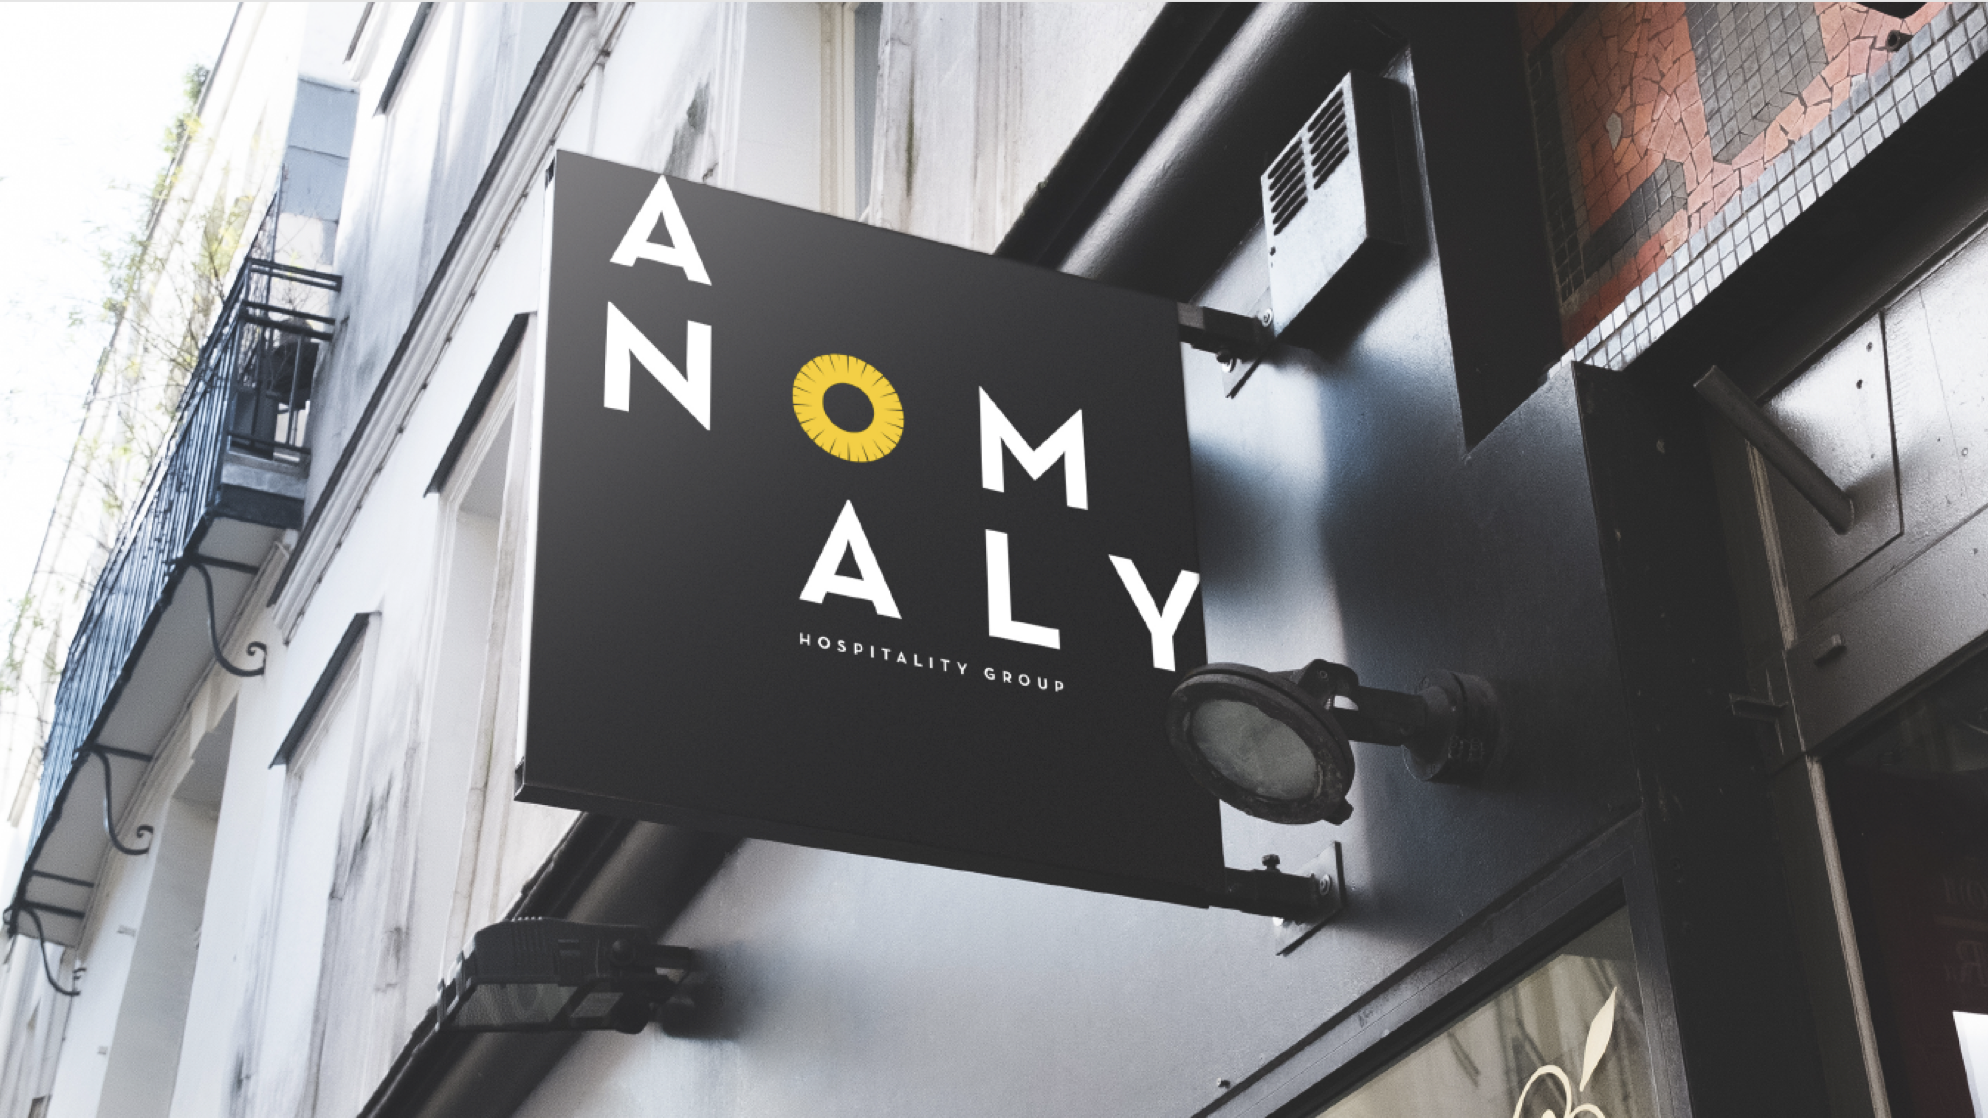 Anomaly Hospitality Group